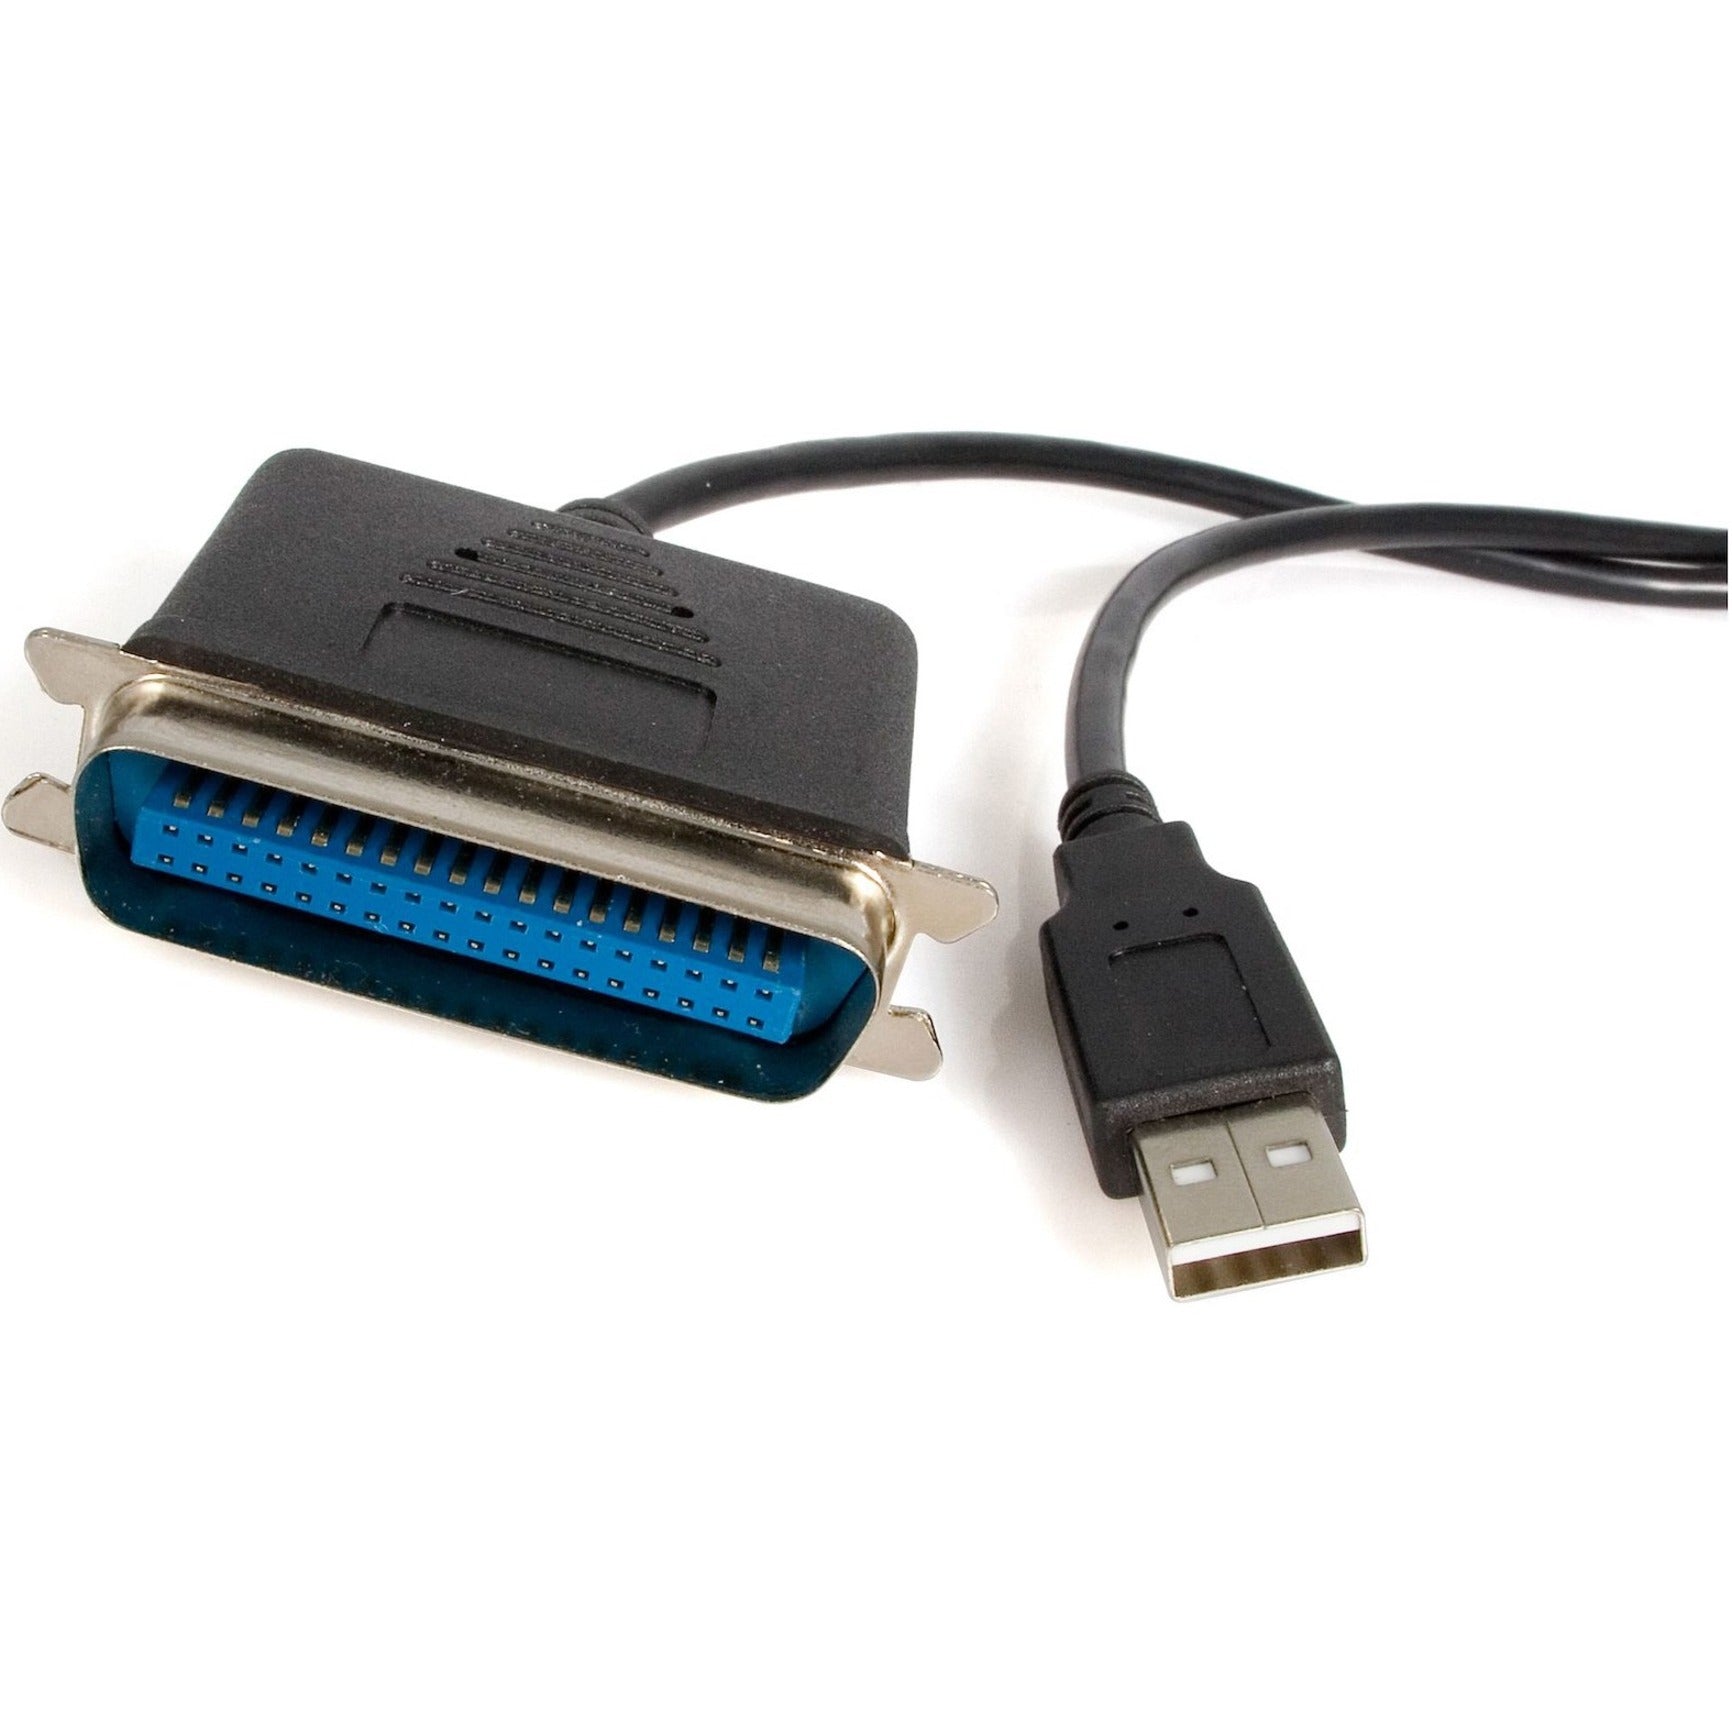 Adaptador de Impresora Paralela StarTech.com ICUSB1284 - USB - 6 ft Conectar y Usar